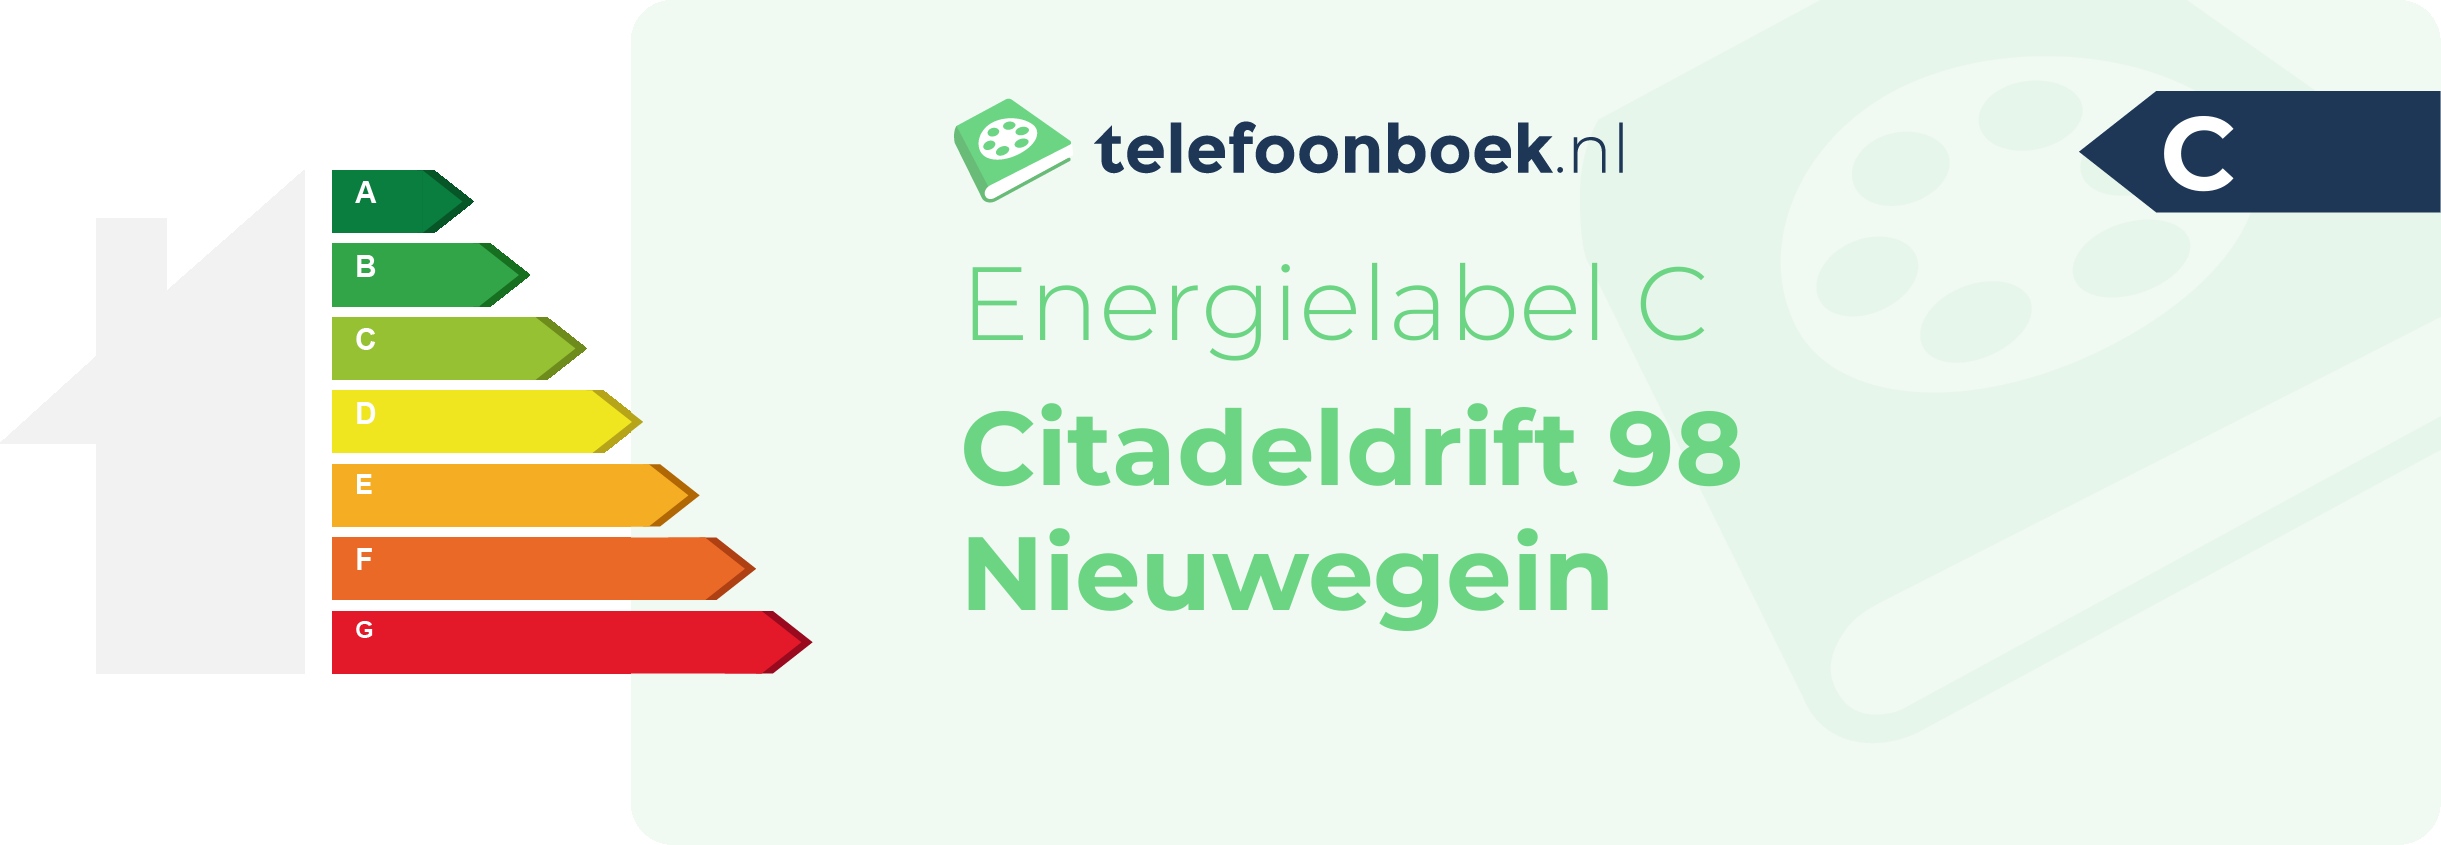 Energielabel Citadeldrift 98 Nieuwegein